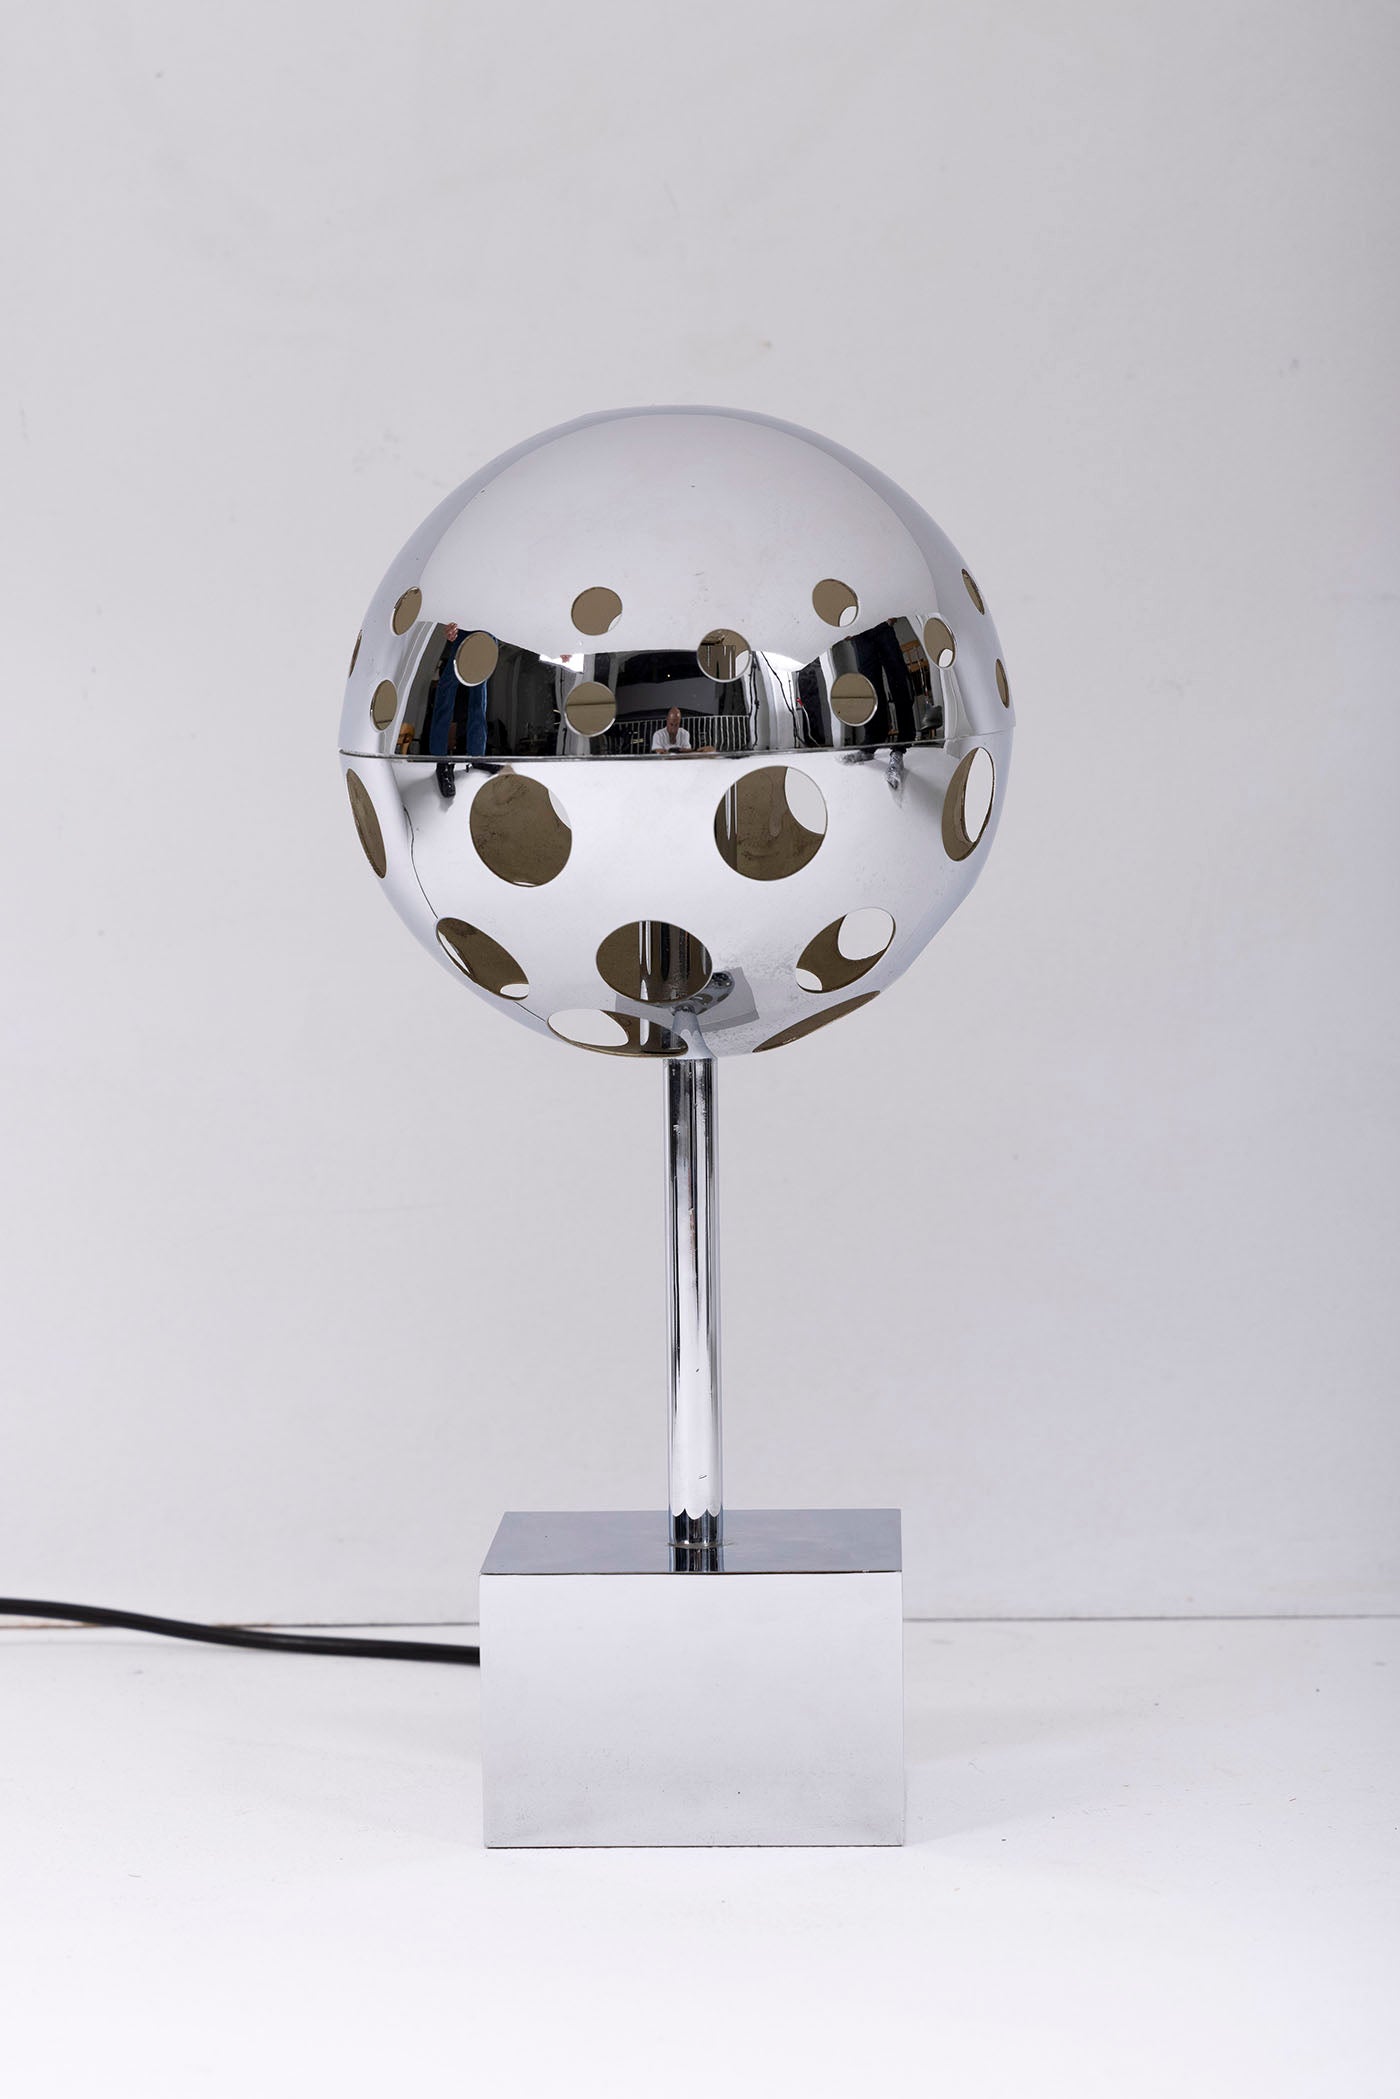 Lampe 10367 du designer Sabine Charoy éditée par Verre Lumière, années 1970. Lampe de table en métal chromé, avec une sphère ajourée sur une base cubique. Fonctionnelle et en très bon état. 